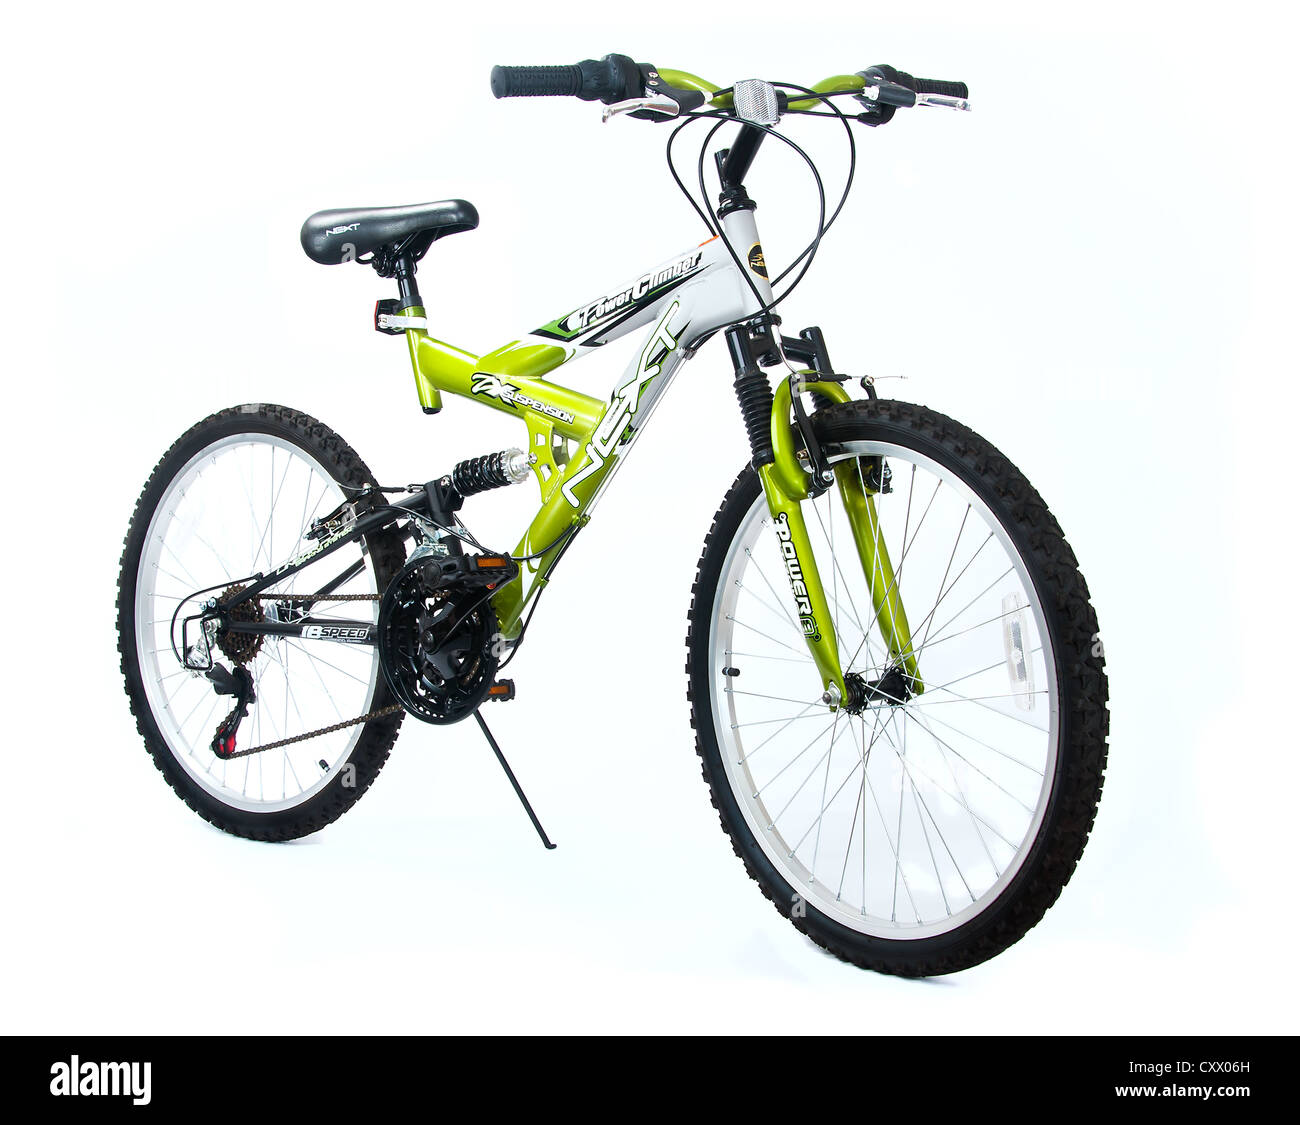 Nouveau vélo avec suspension à ressort Banque D'Images